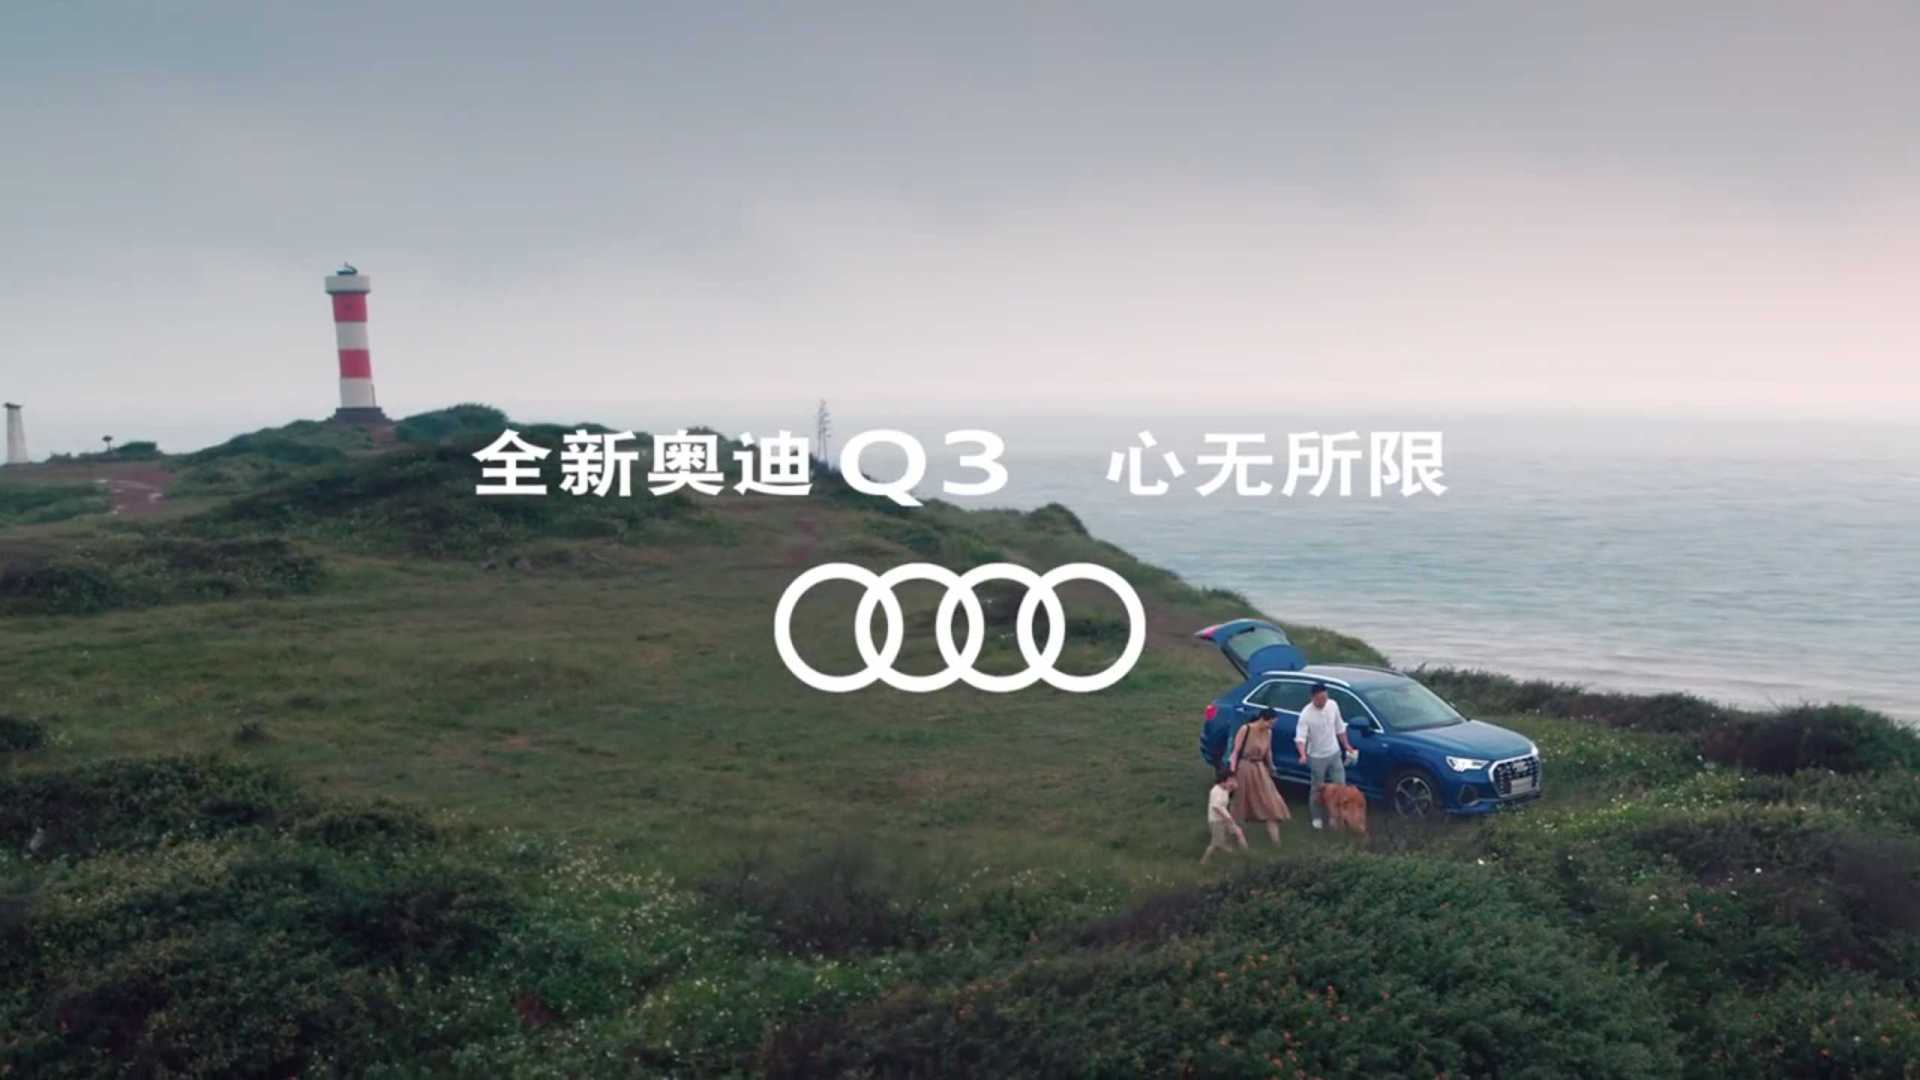 Audi 奥迪Q3 2019上市用户形象视频 #一家人篇